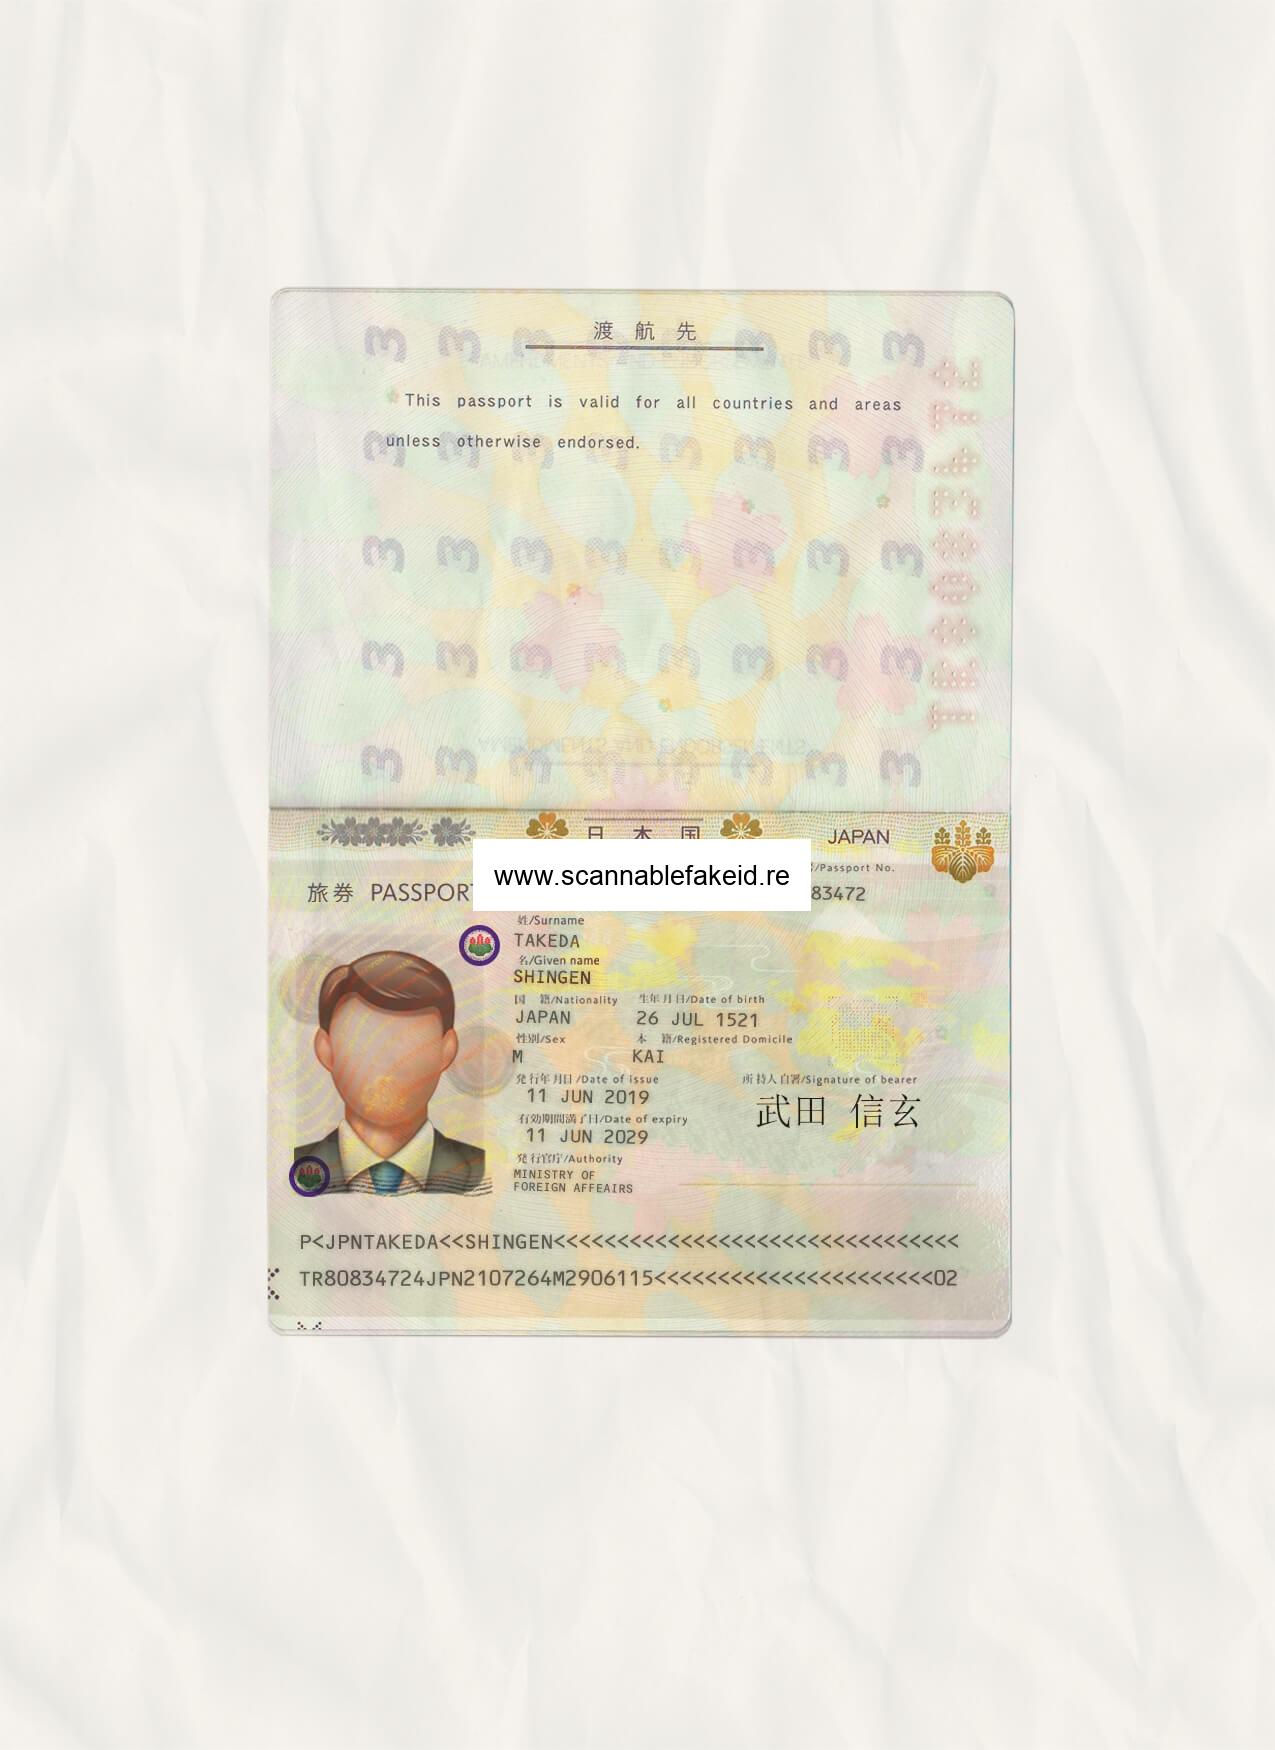 Japan Fake Passport - Buy Scannable Fake ID Online - Fake Drivers License